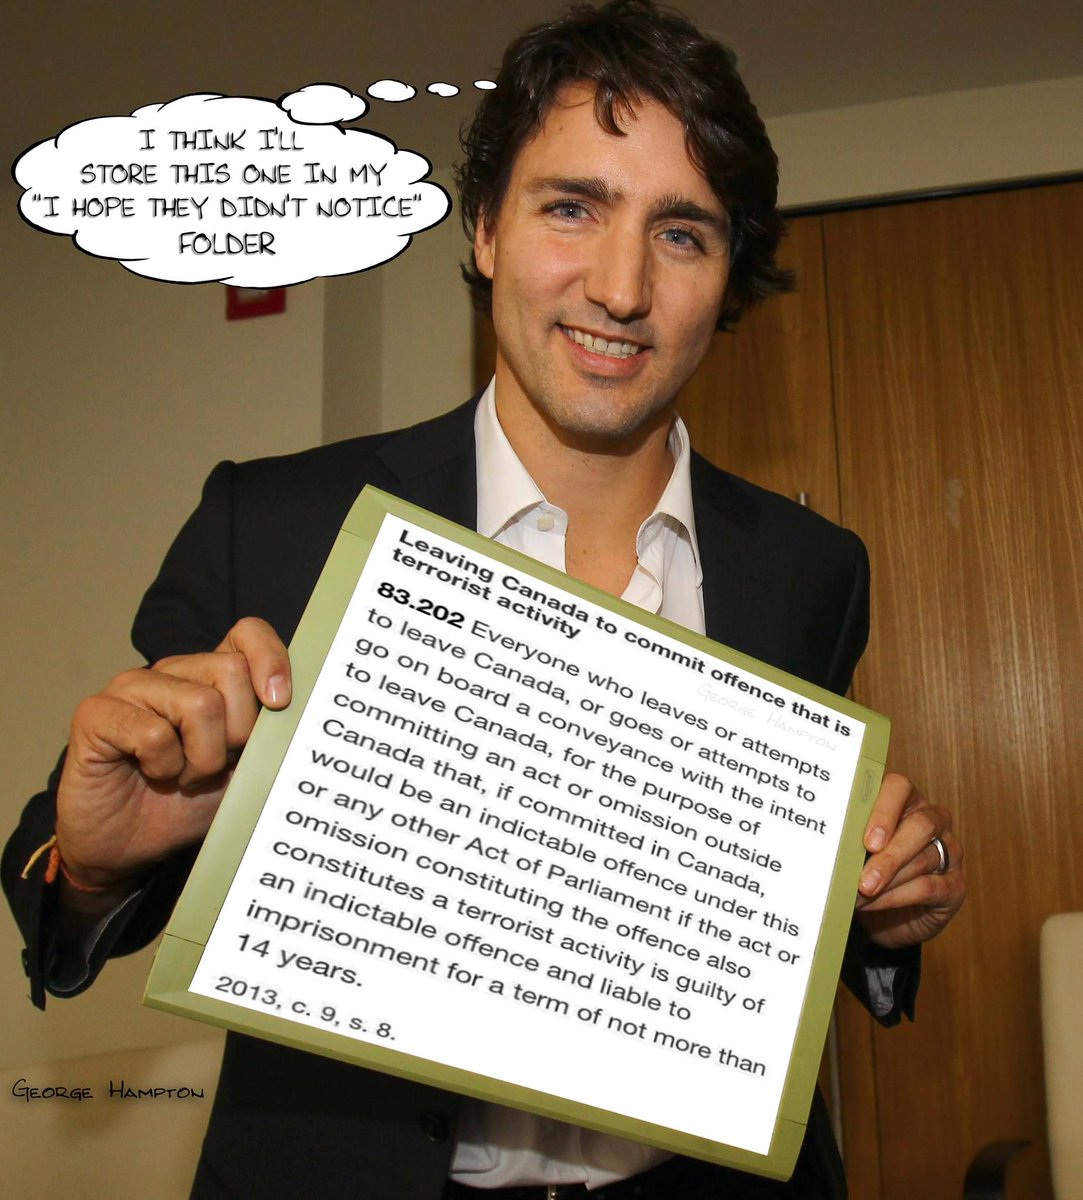 #TrudeauDictatorship #FuckTrudeau  #TrudeauCrimeMinister #LiberalCorruption  #EveryoneHatesTrudeau #BlackFace #FreelandMustGo #TrudeauForTreason #TrudeauMustResign #Stoptrudeau #ICantstandTrudeau #POEC #ClimateCult #PierrePoilievre4PM #Trudeau #JustinTrudeau #MakeCanadaGreatAgain